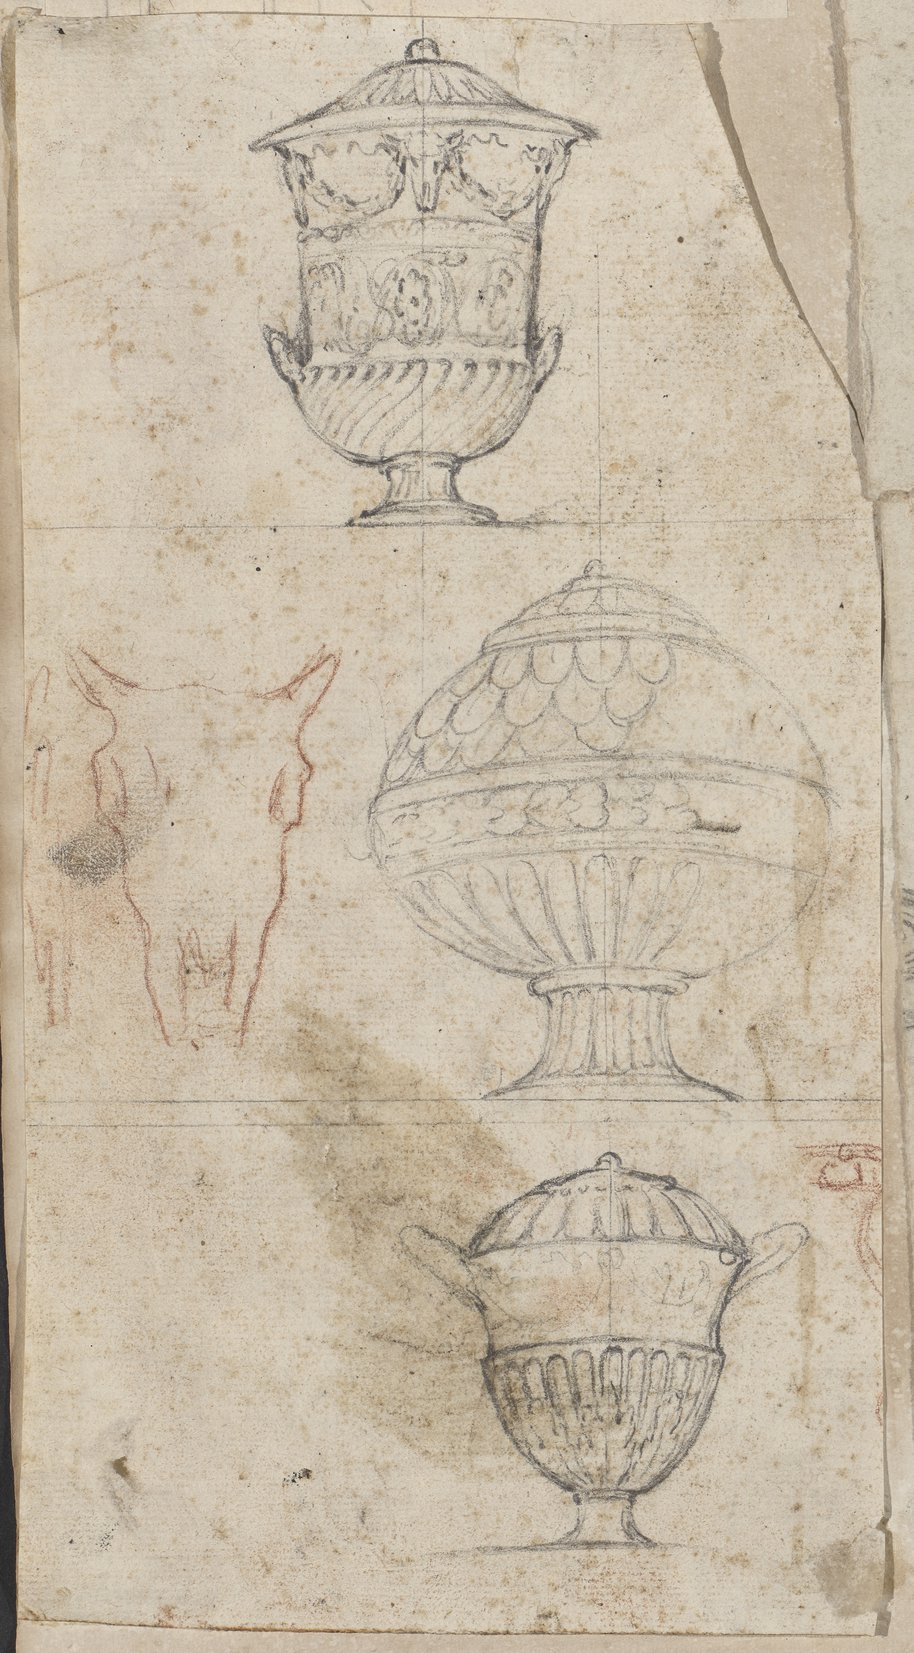 Auflichtaufnahme Übereinander angeordnete Kreidezeichnungen von drei Urnen und ein Bukranion in Rötel skizziert